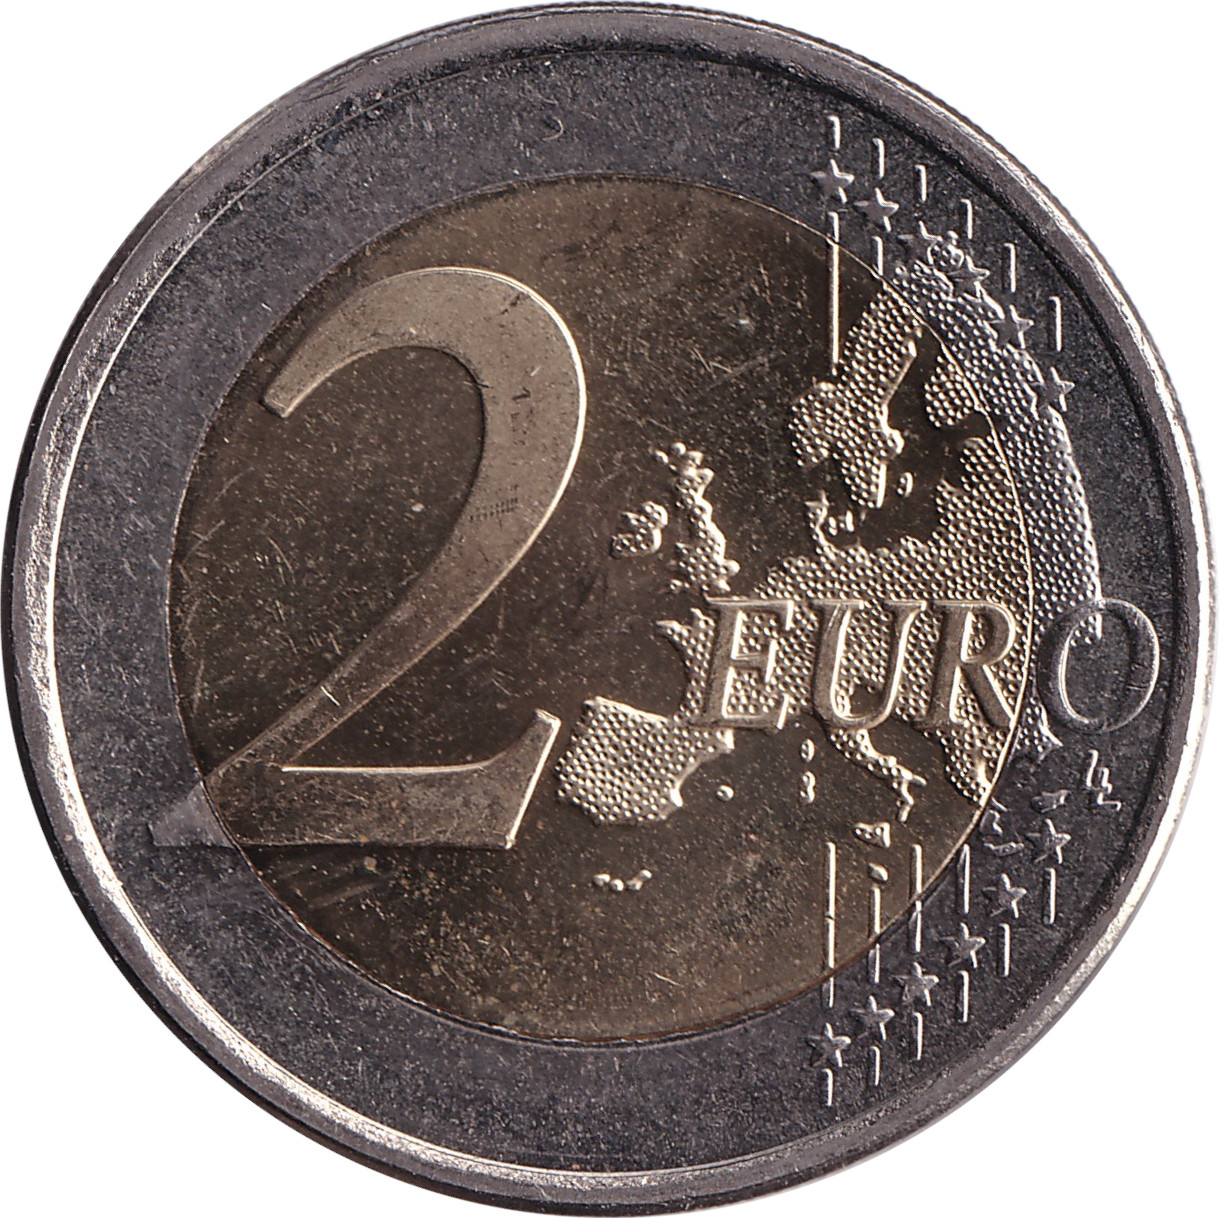 2 euro - Franc Rozman